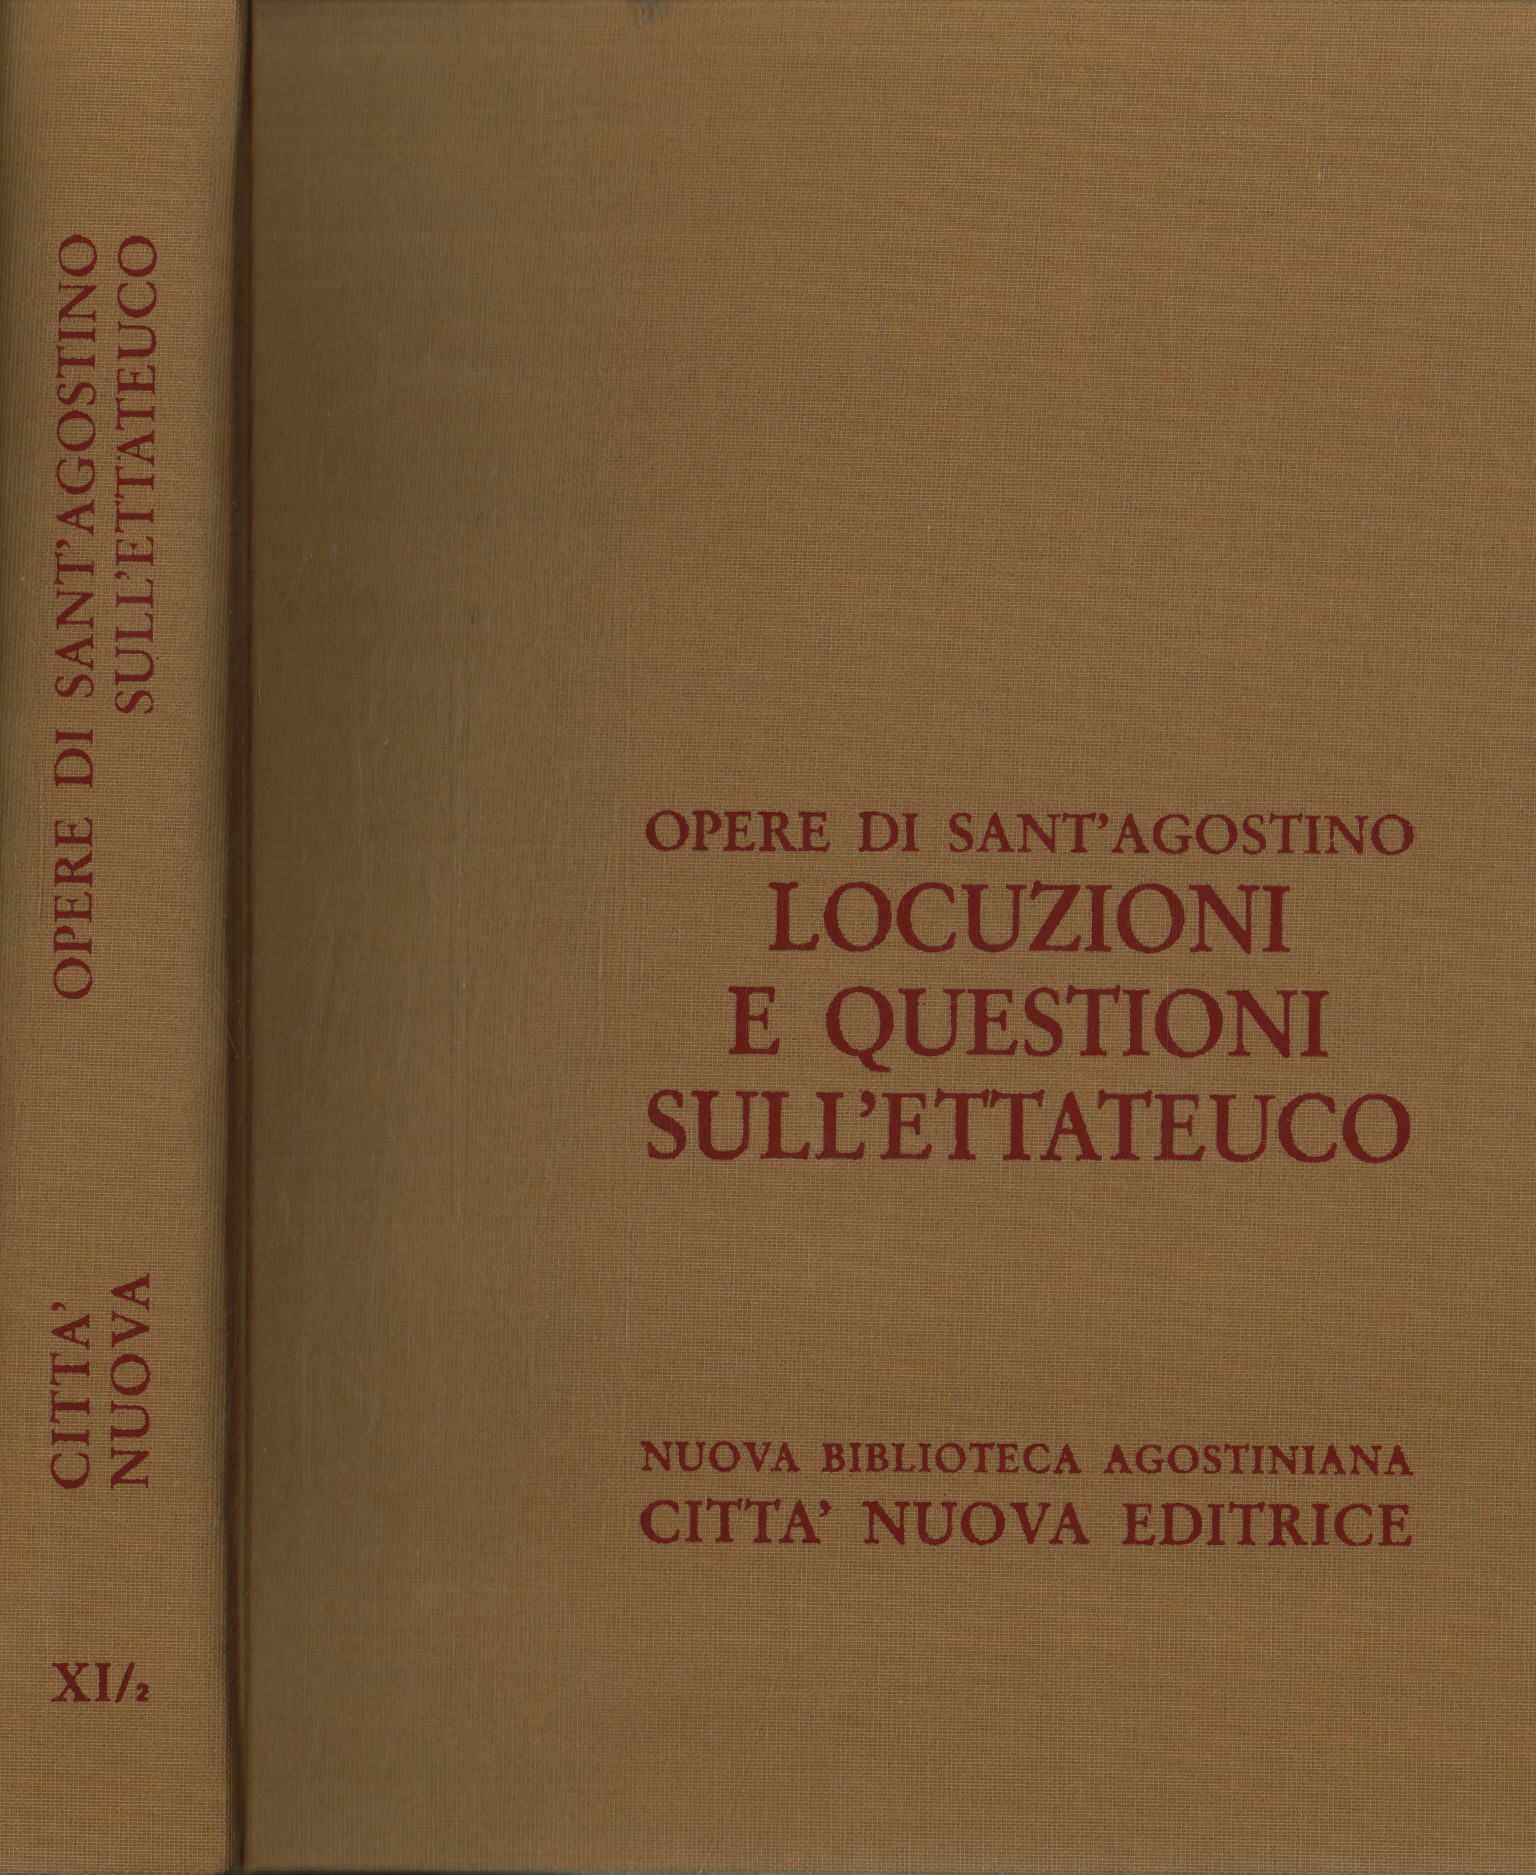 Obras de Sant'Agostino. frases